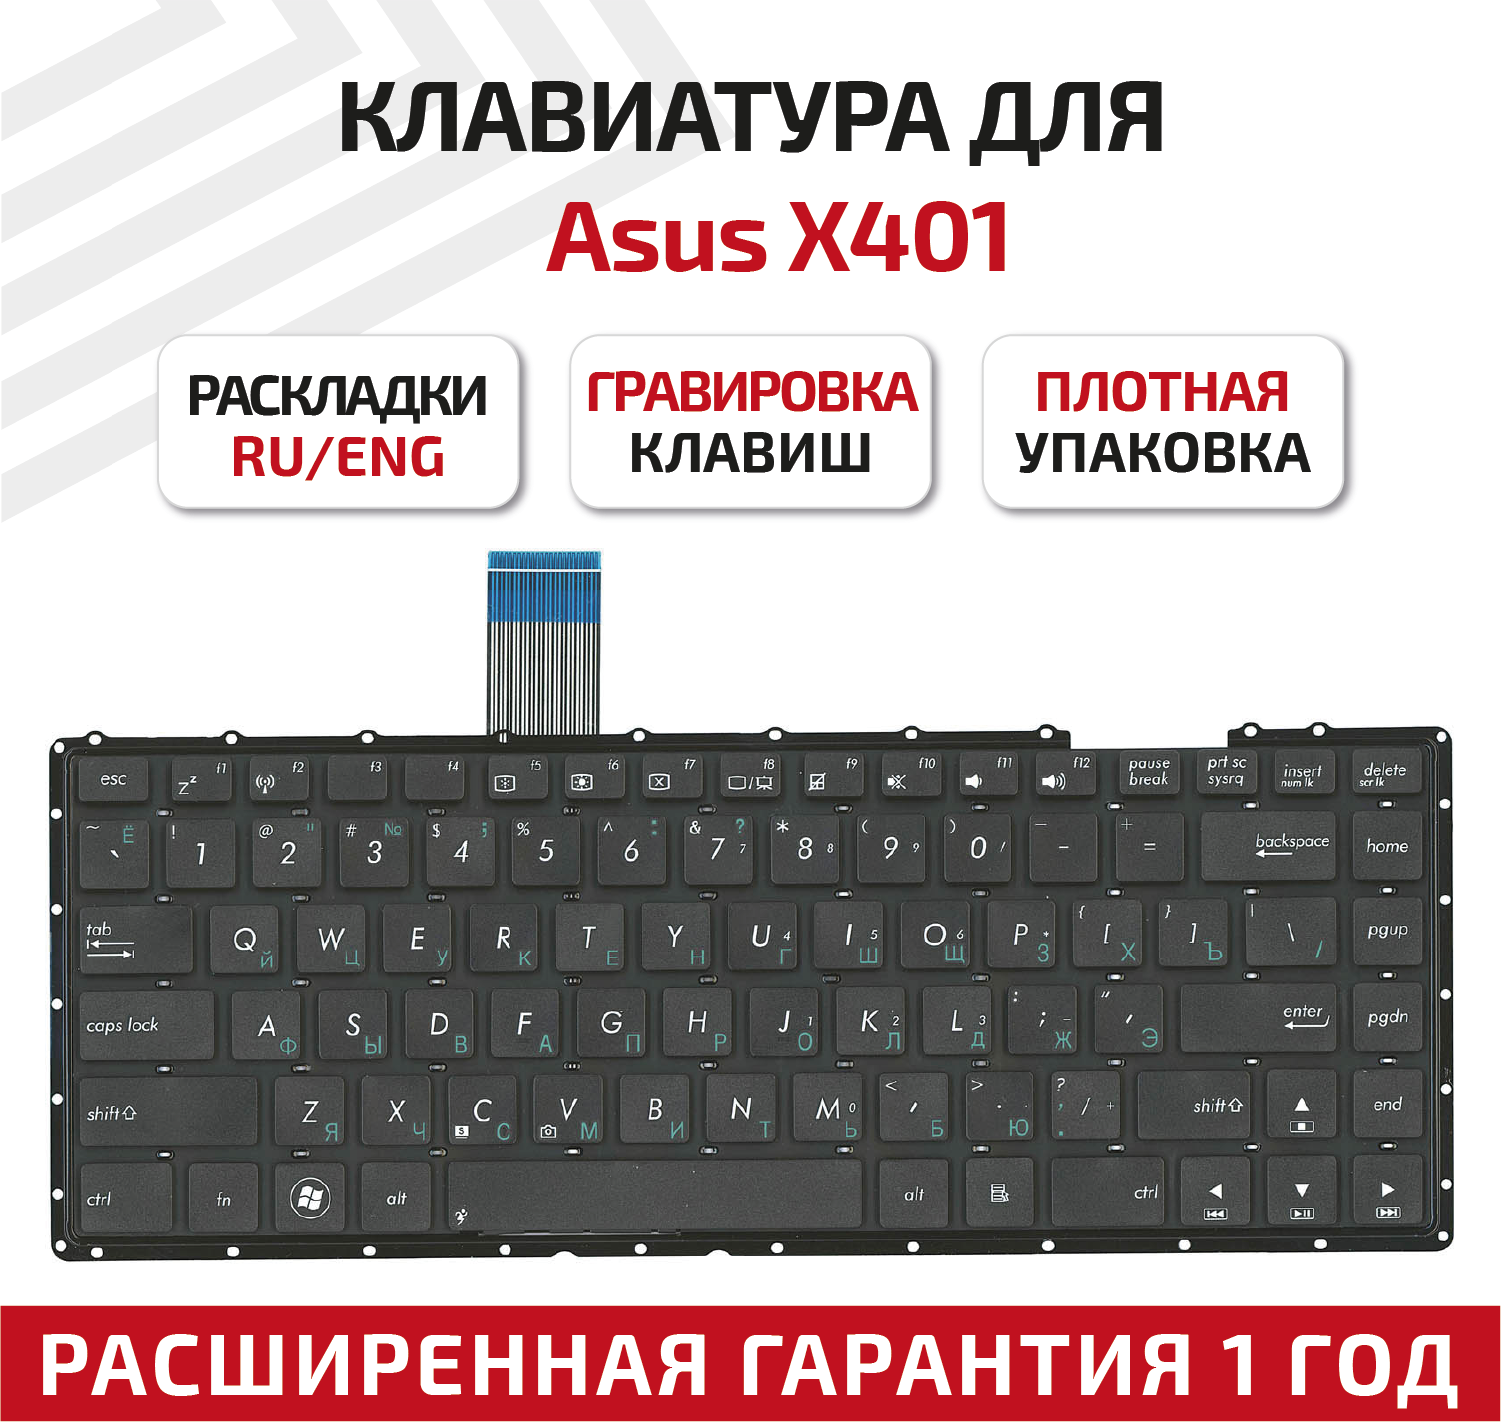 Клавиатура (keyboard) 13GN4O1AP030-1 для ноутбука Asus F401 F401A F401U X401 X401A X401A-W X401U X401U-W черная